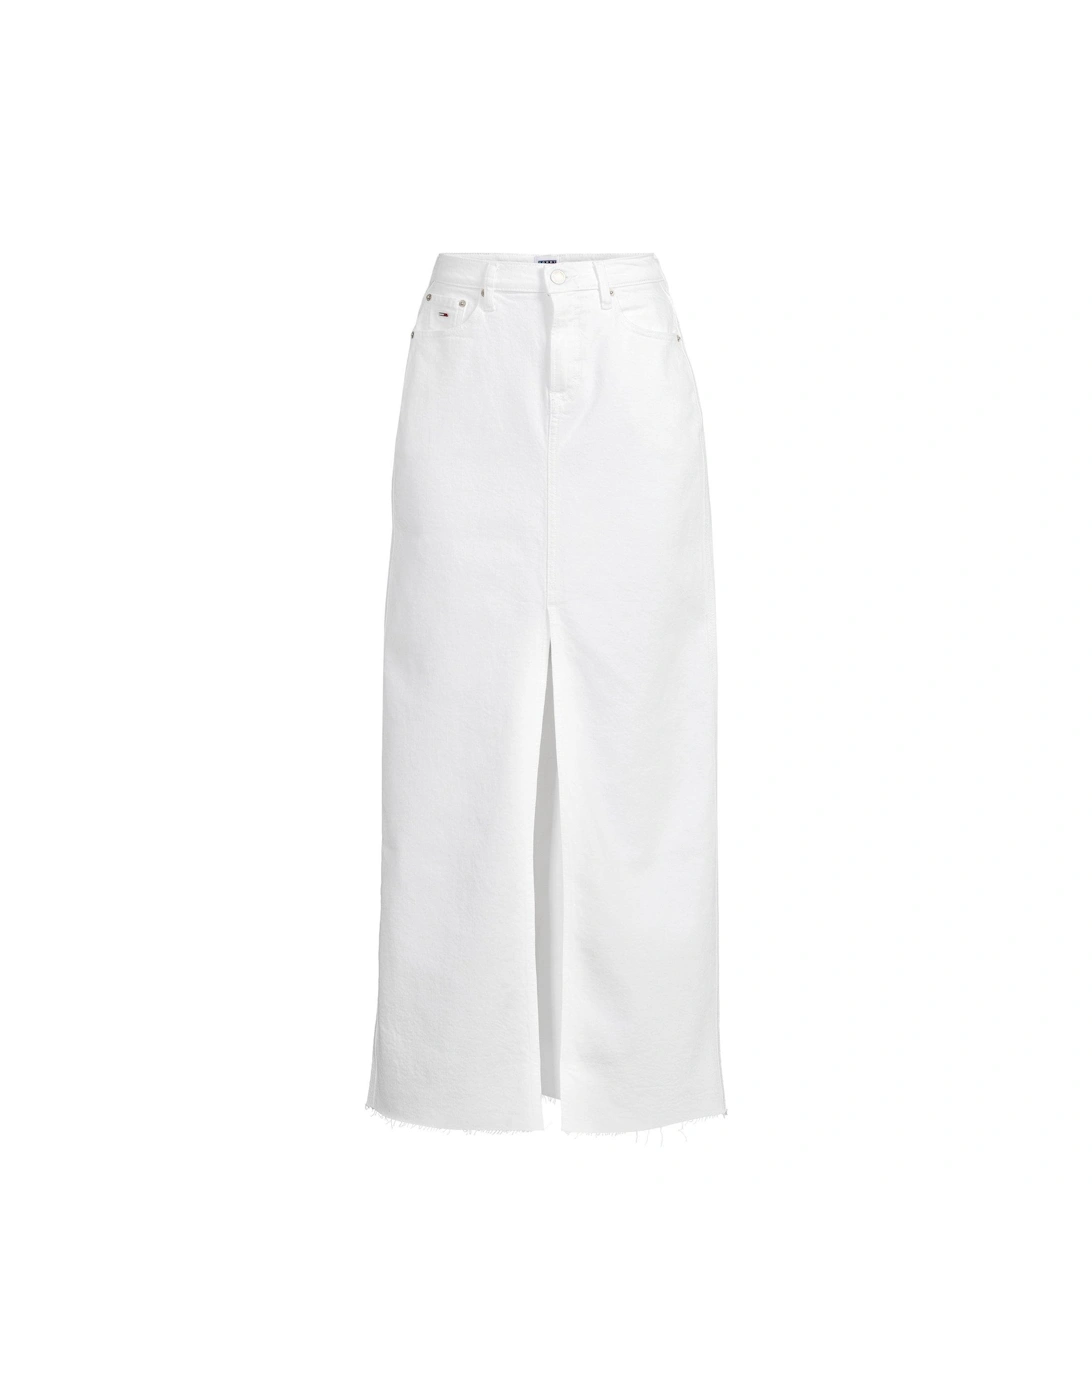 Denim Maxi Skirt - White